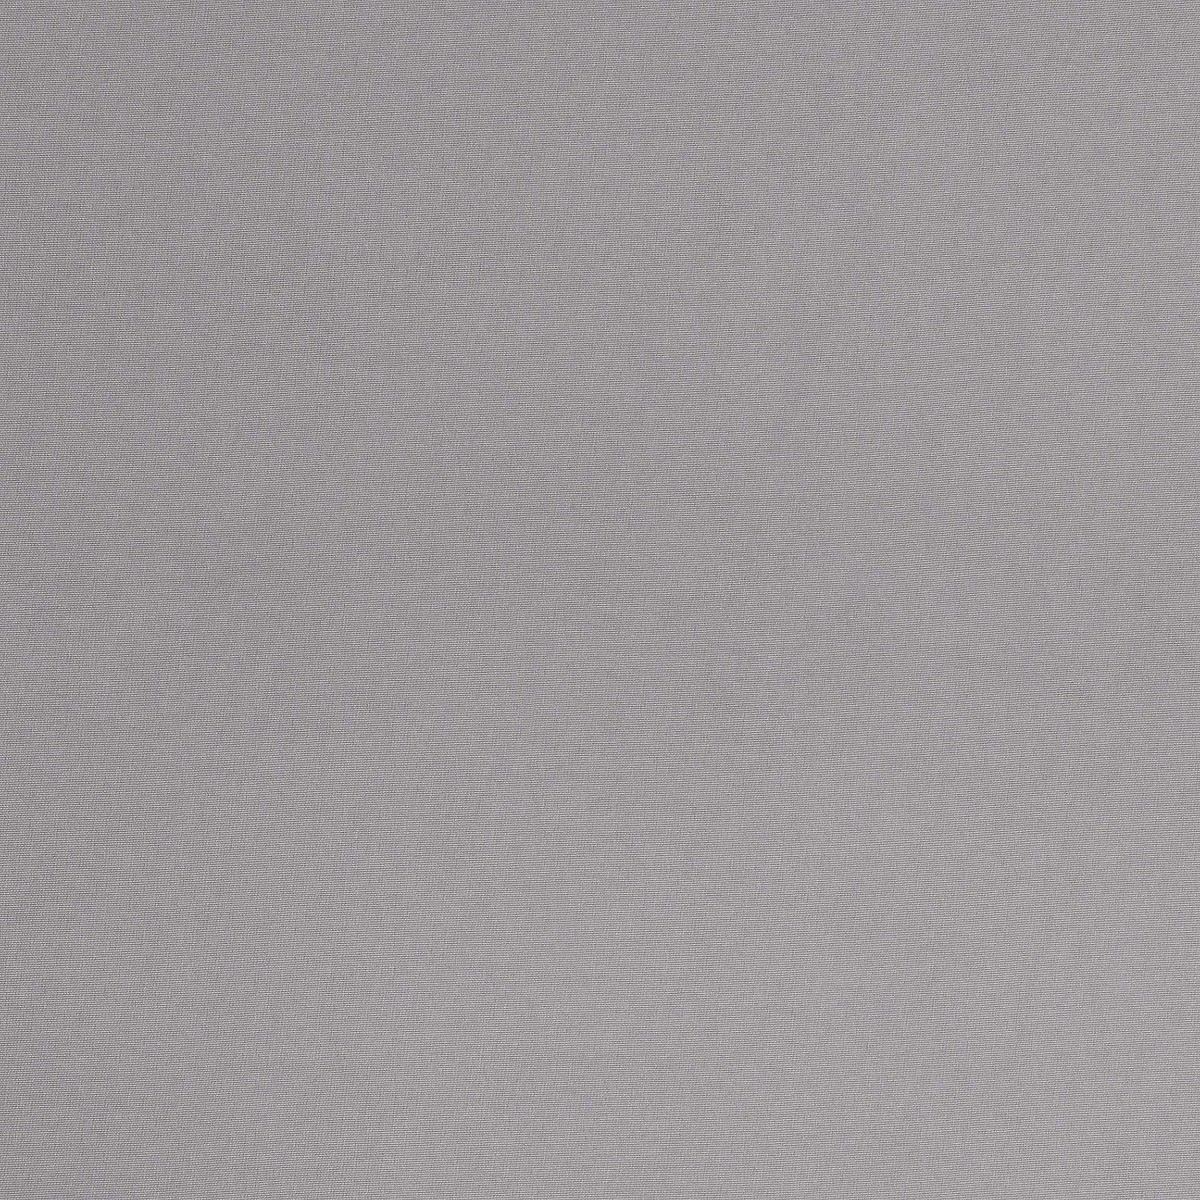  Подкладочная ткань ULTRA GREY, ширина 278 см  - Фото